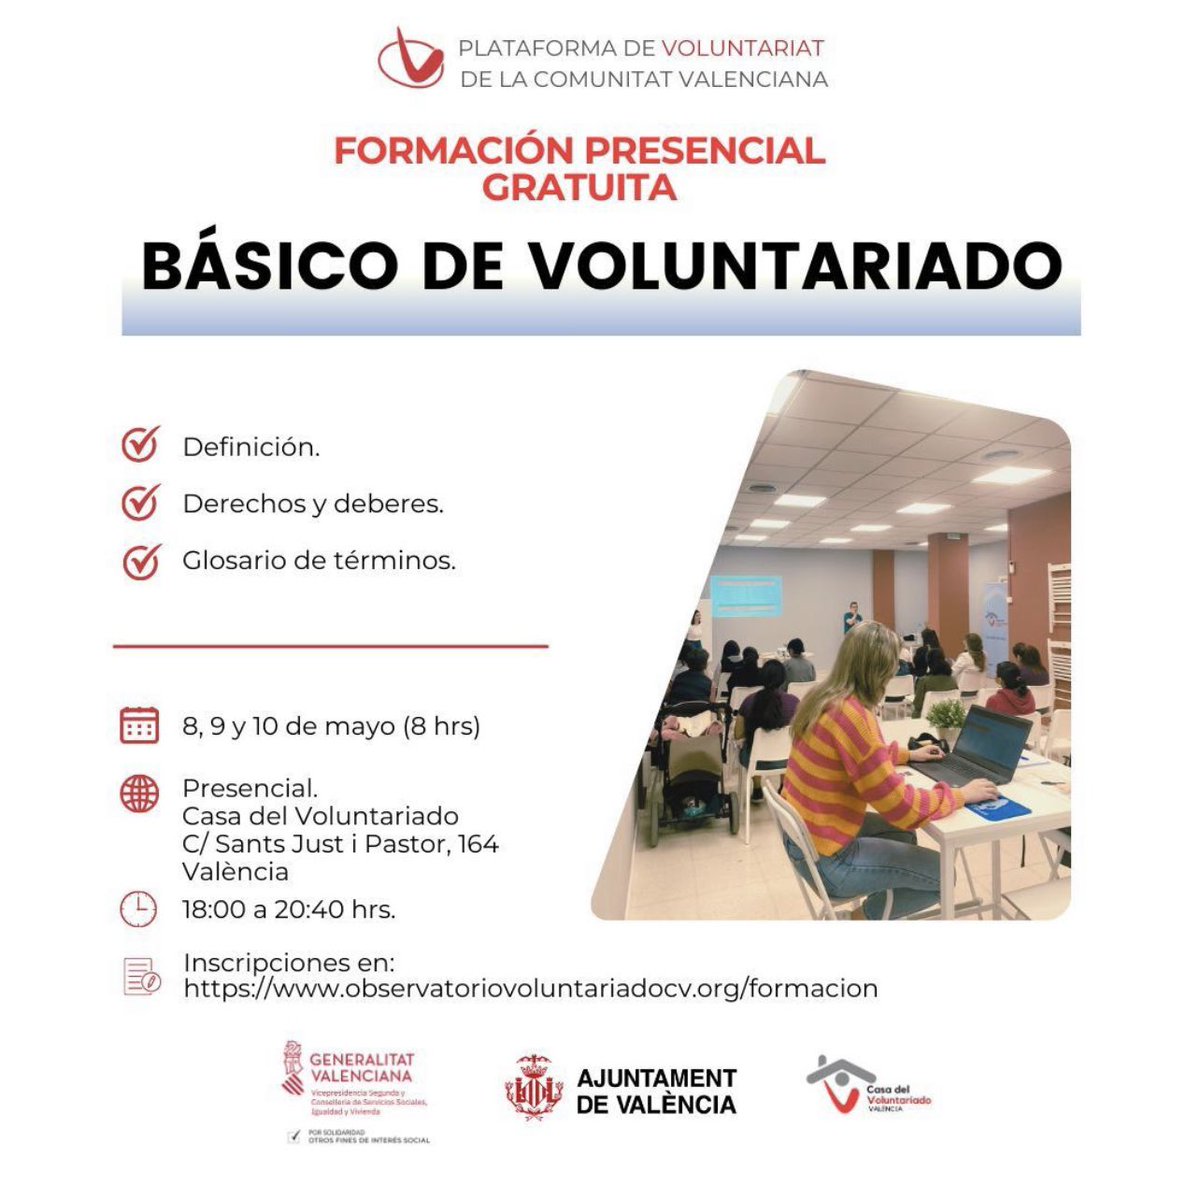 Si quieres hacer #Voluntariado en la #ComunitatValenciana te compartimos la información sobre la formación organizada por la @PVSCV “Básico de Voluntariado”.